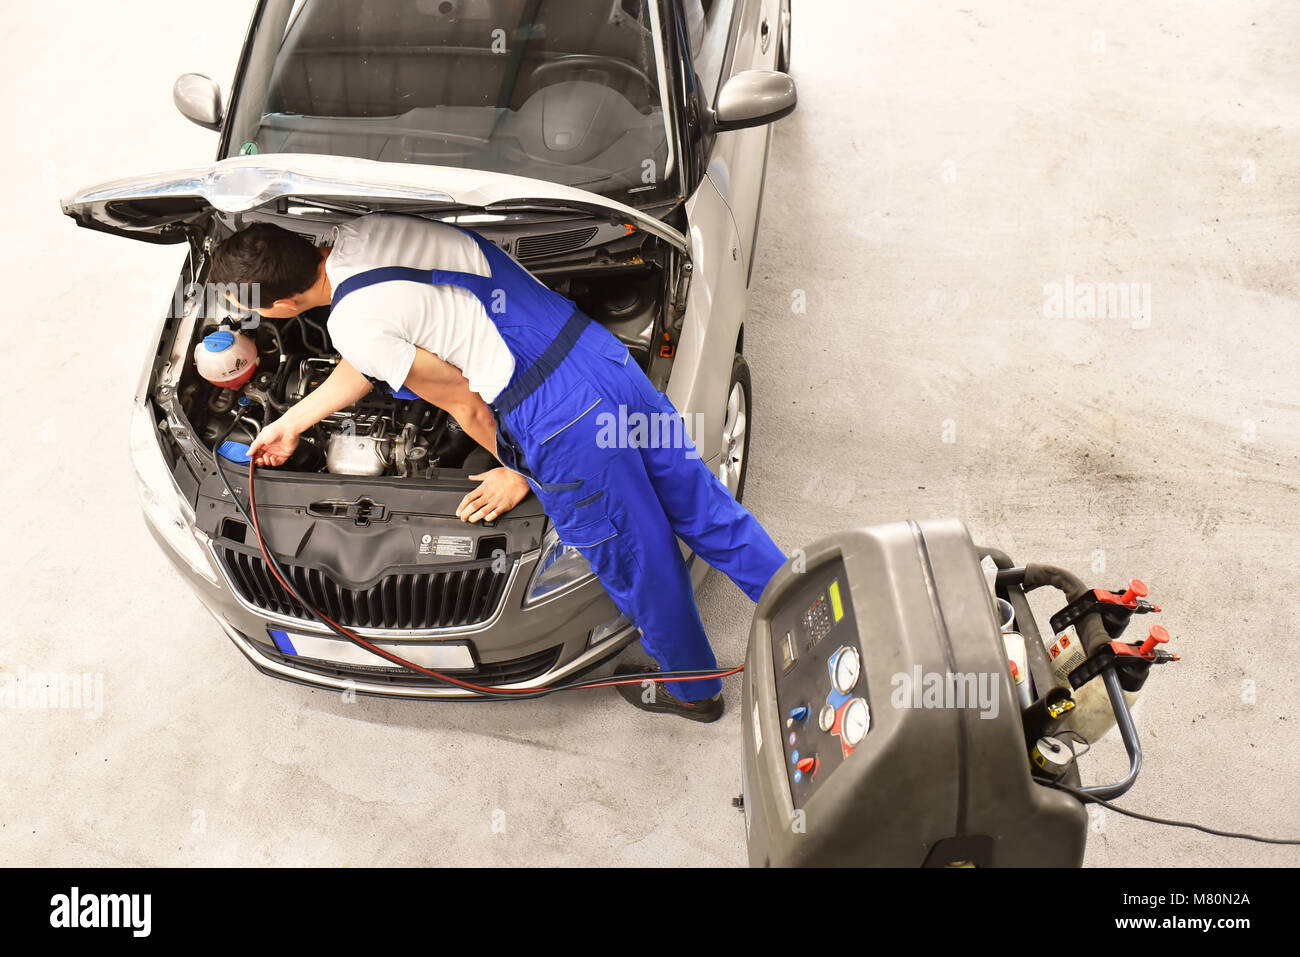 Wartung und Inspektion eines Autos in einer Werkstatt - Mechaniker prüft die Technologie eines Fahrzeugs für die Funktion und Sicherheit Stockfoto